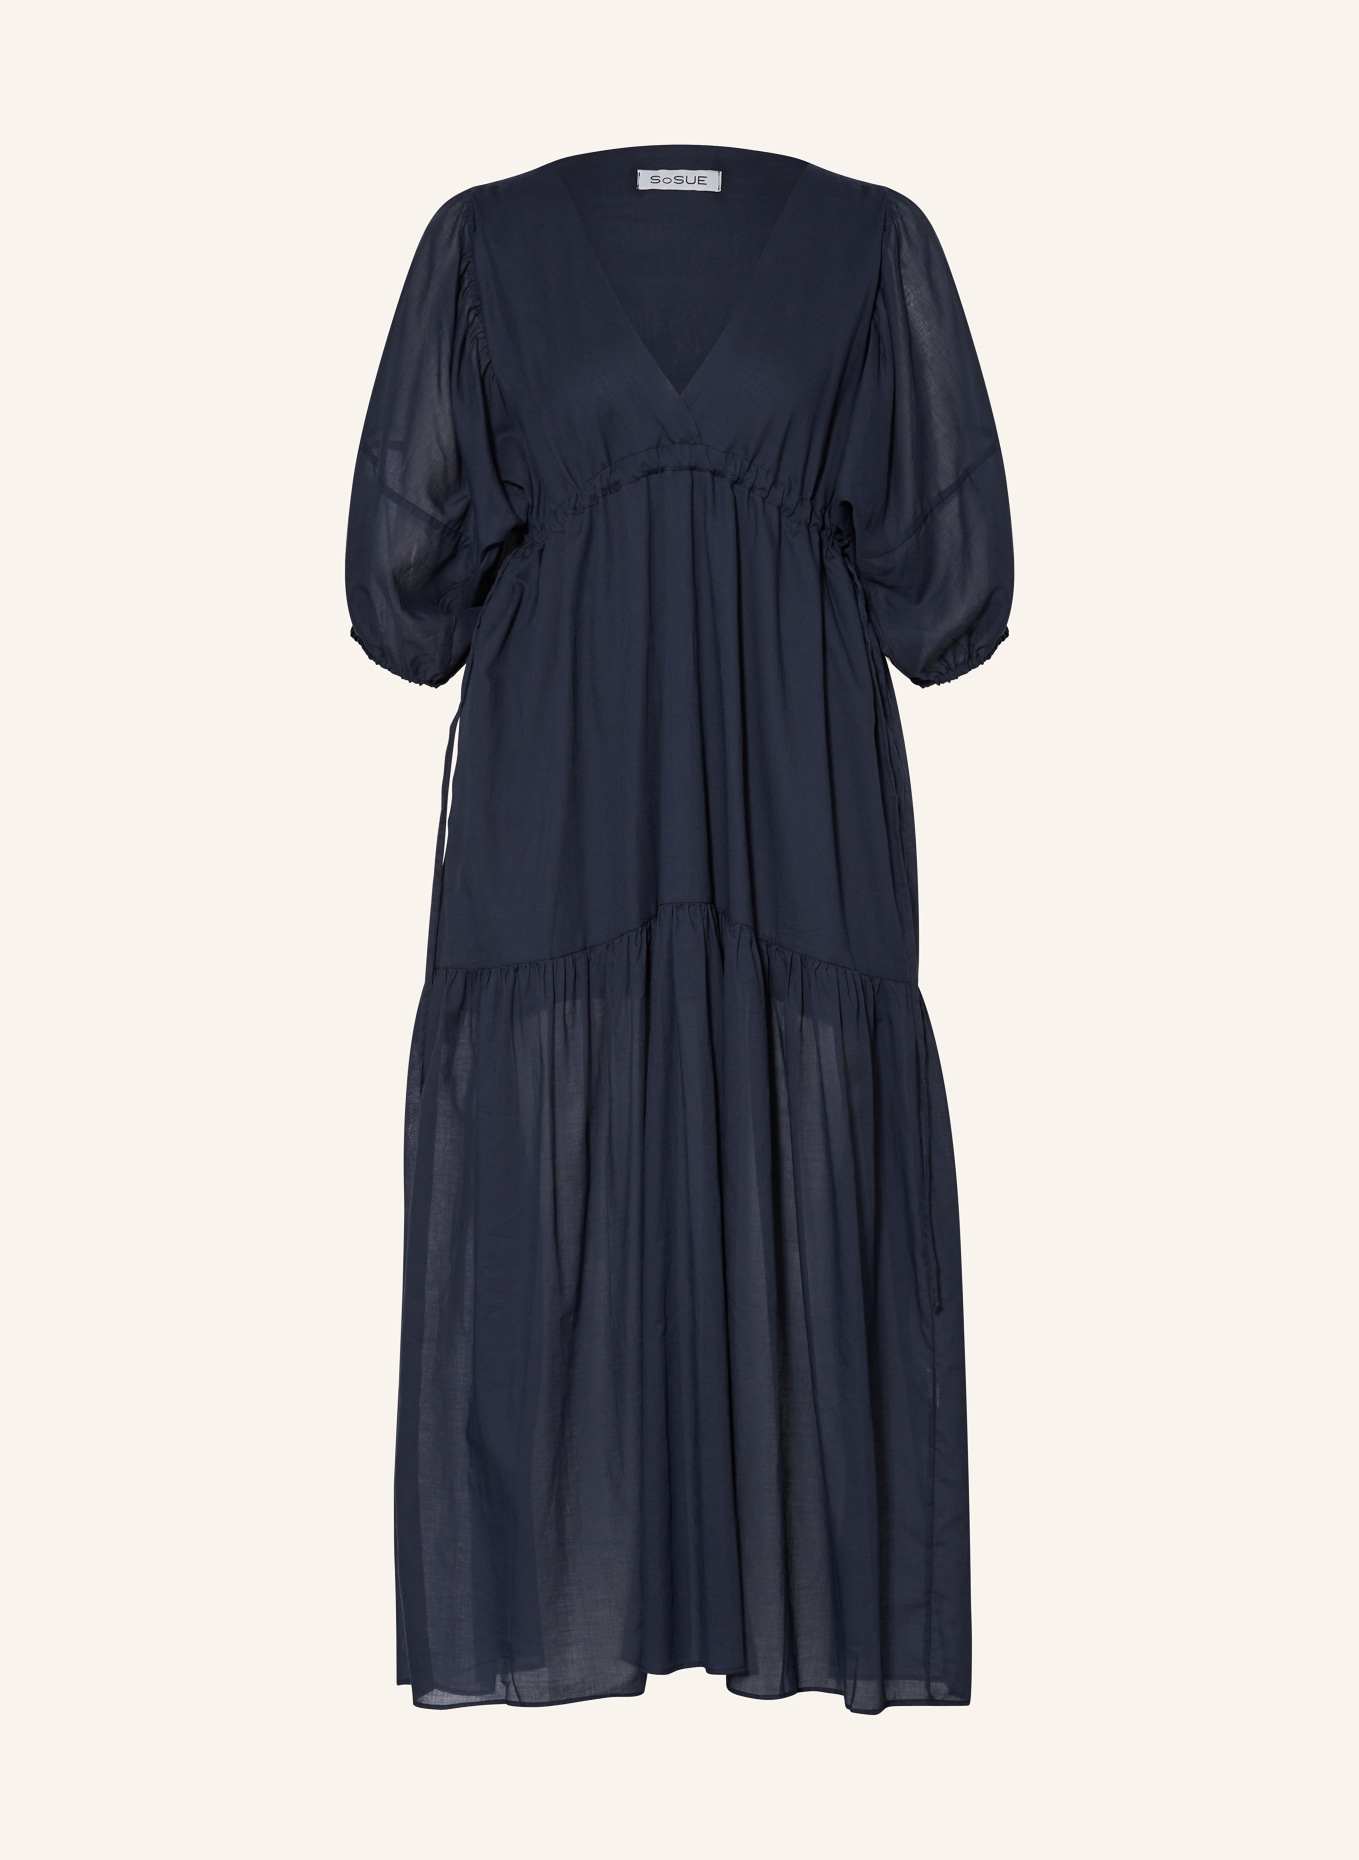 SoSUE Kleid mit 3/4-Arm, Farbe: DUNKELBLAU (Bild 1)